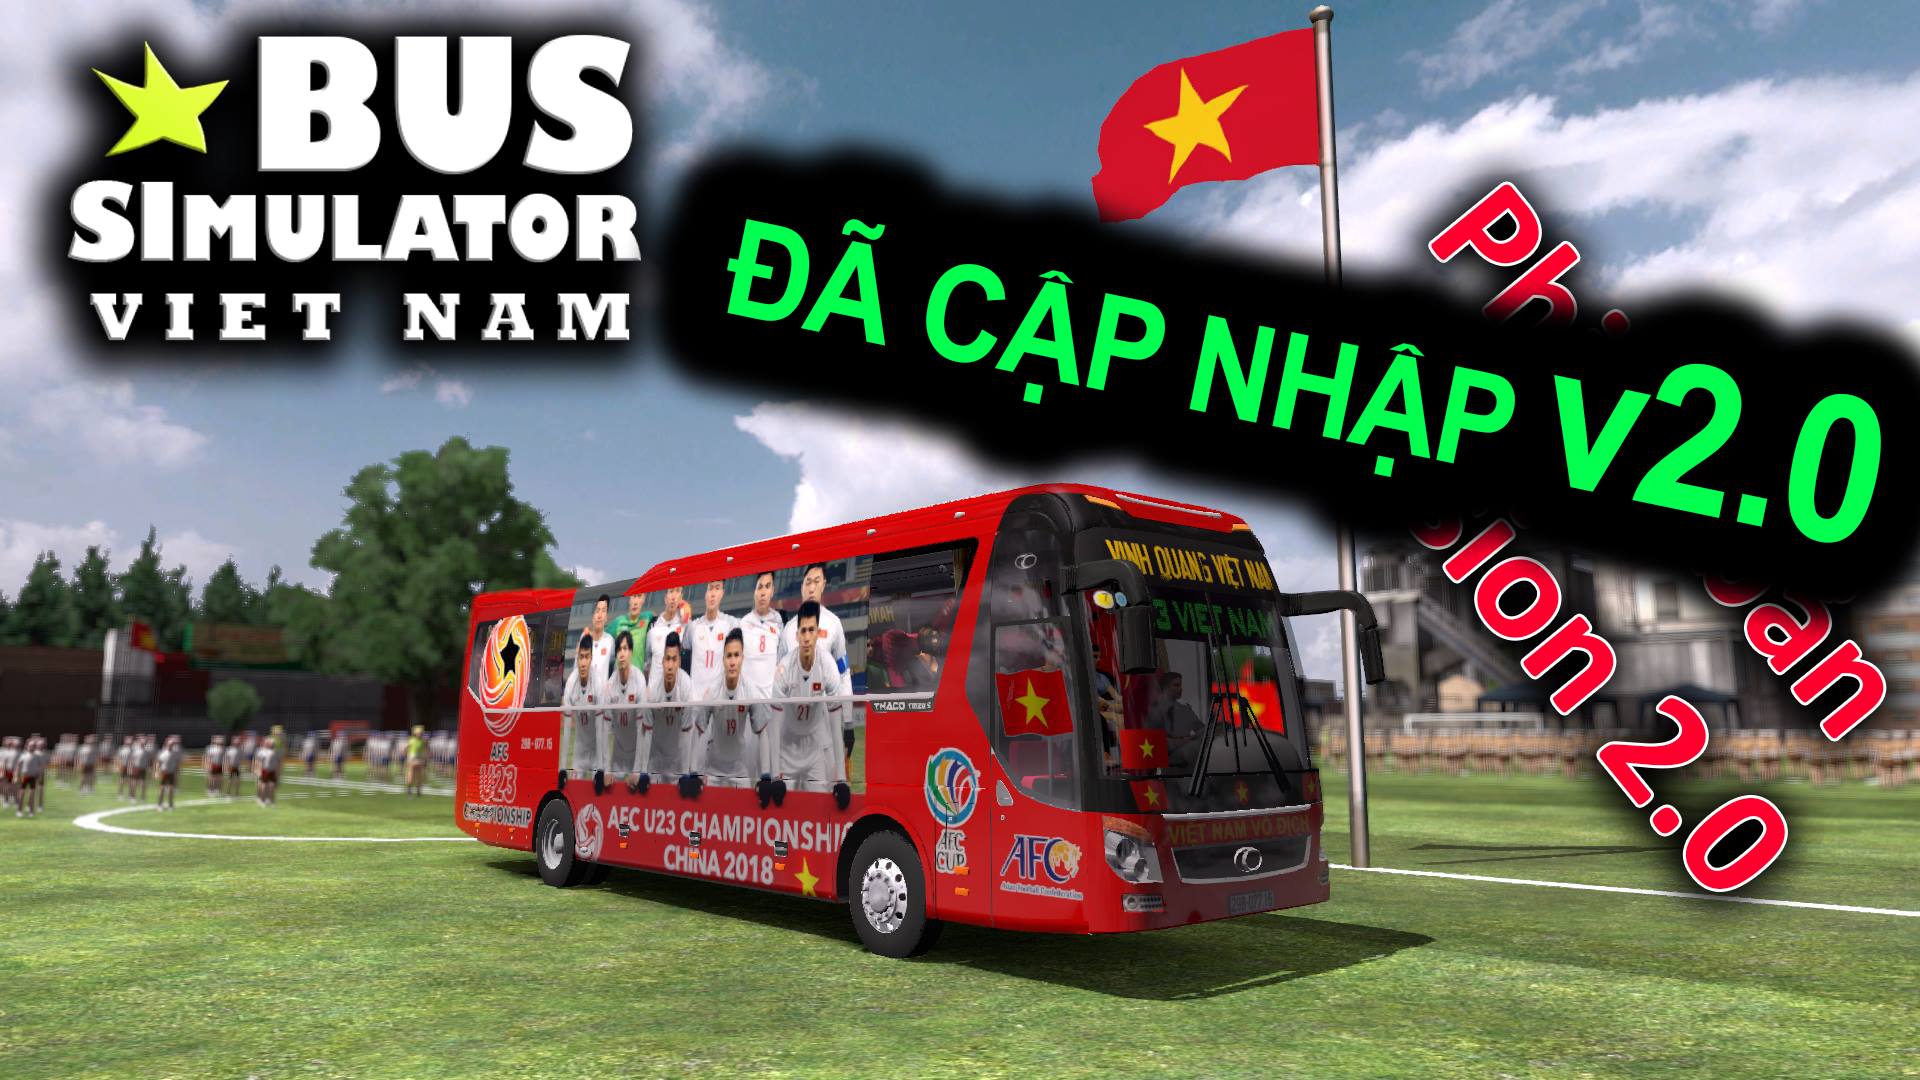 minibus simulator vietnam free download latest version